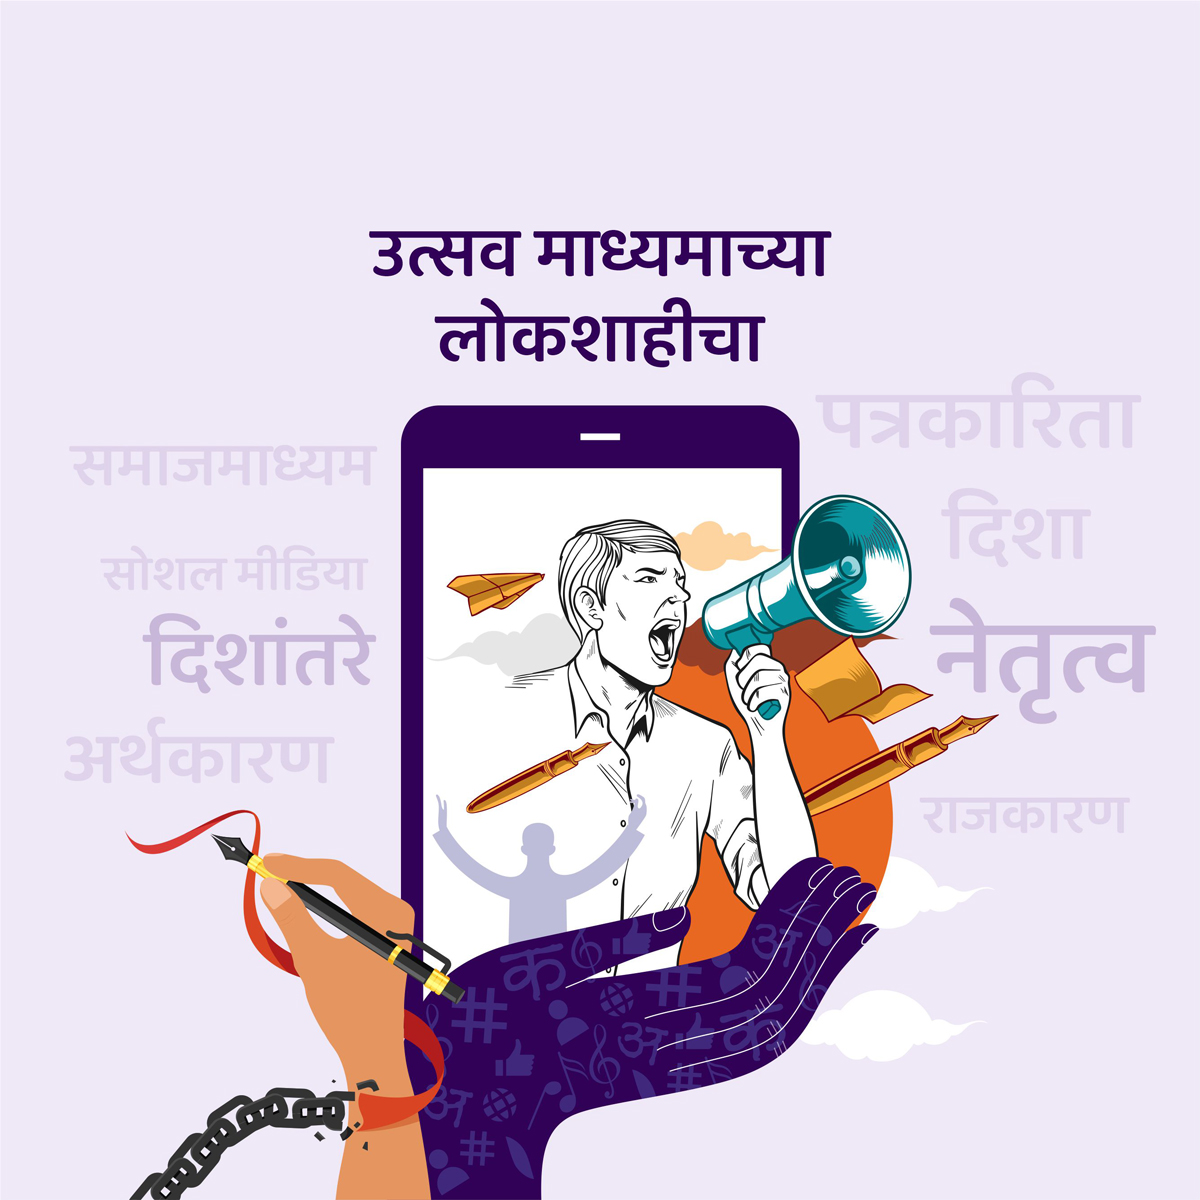 Marathi social media utsav madhyam lokashai mobile creative design